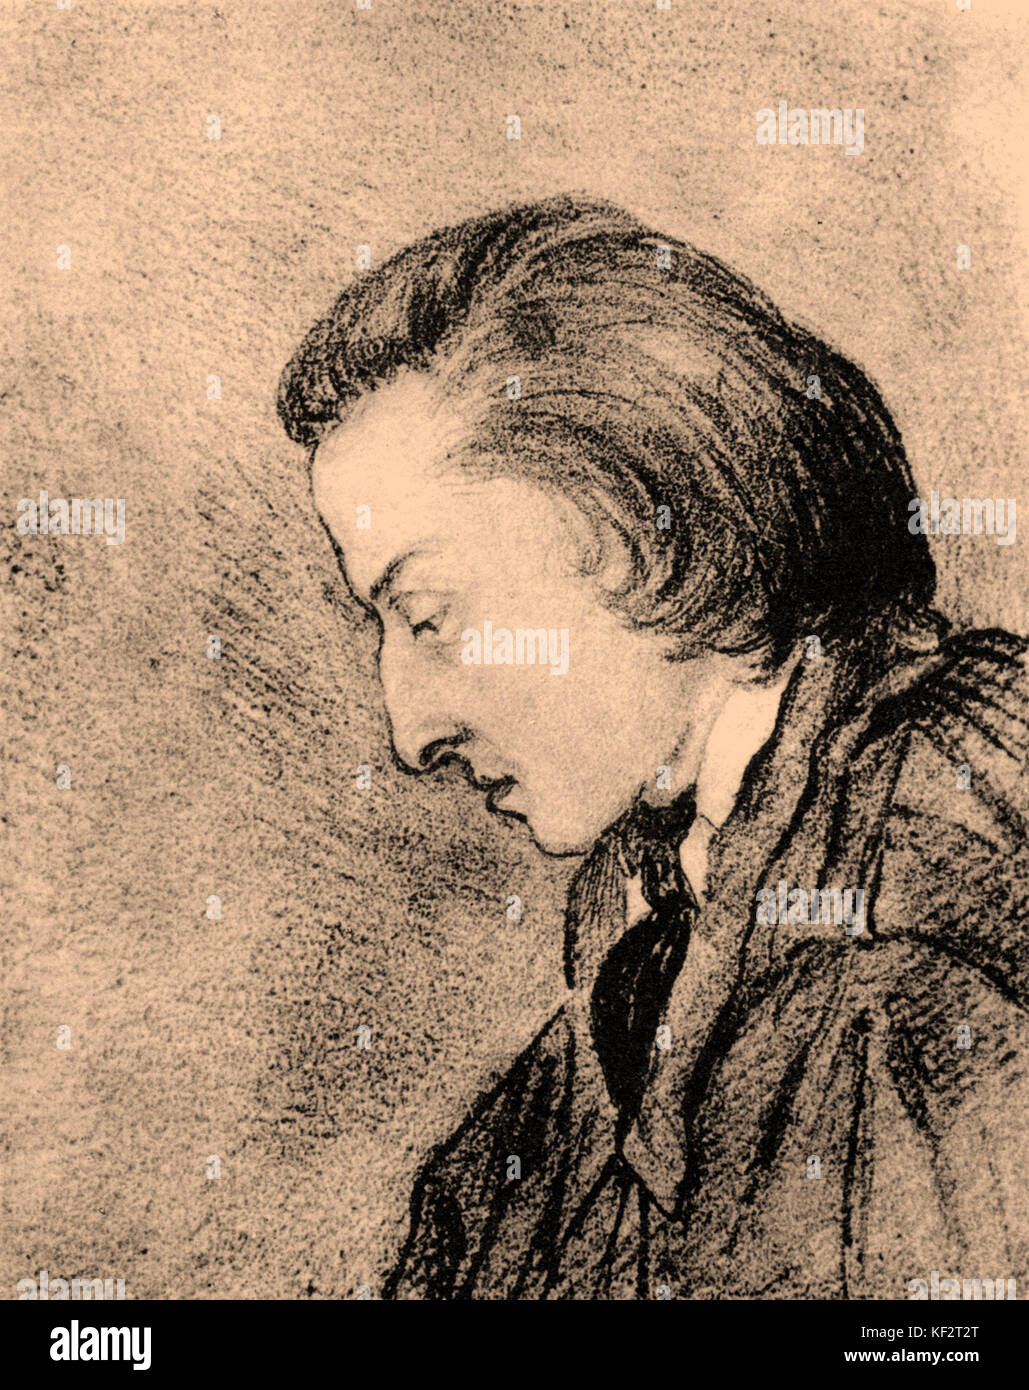 Frédéric Chopin, perfil retrato de George Sand. Dibujo. Compositor polaco Frederic Chopin (1810-1849). Foto de stock